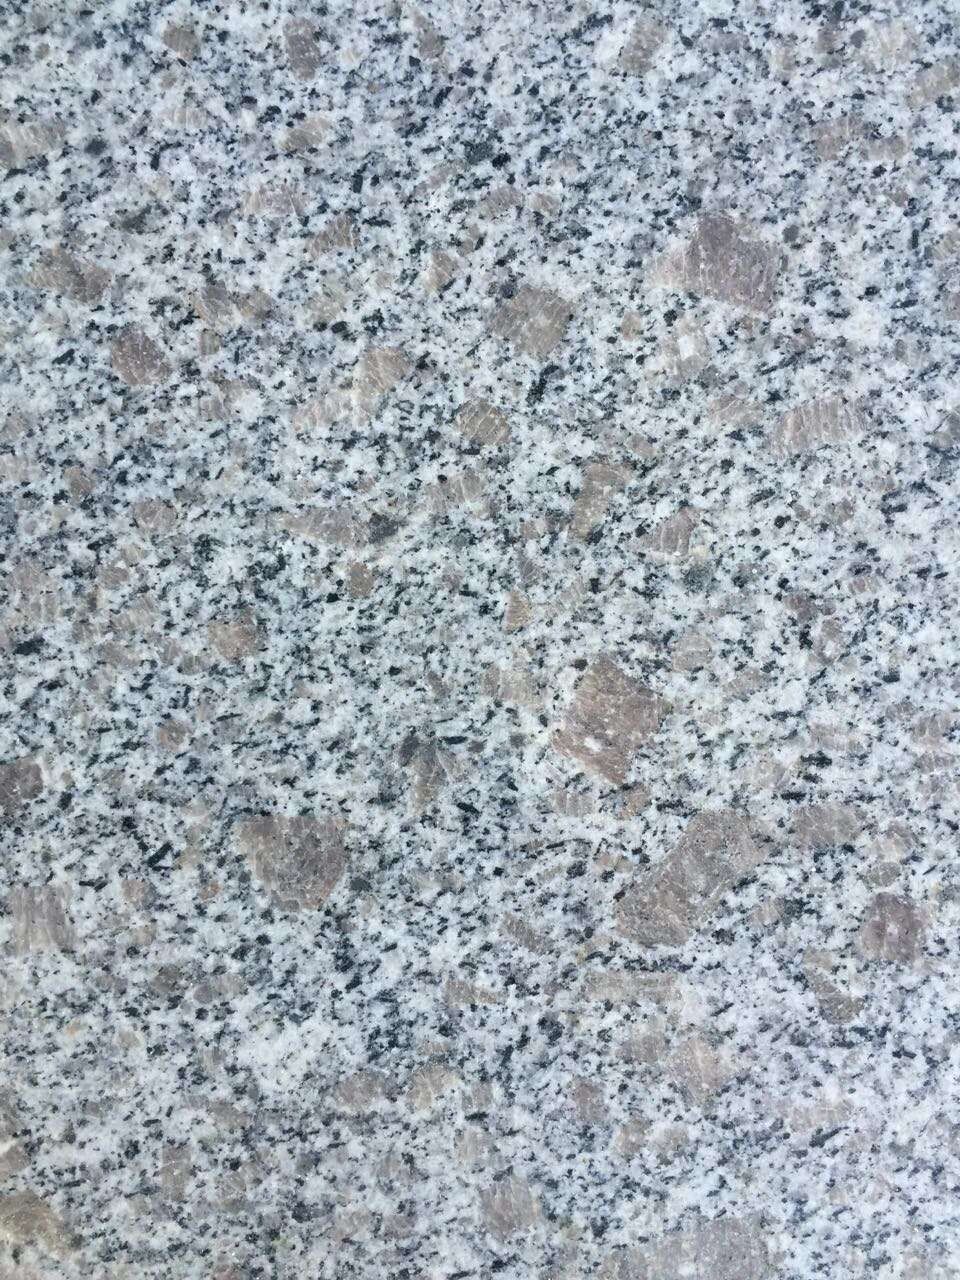 China Pearl White Granite Tiles For Floor - granite-tiles